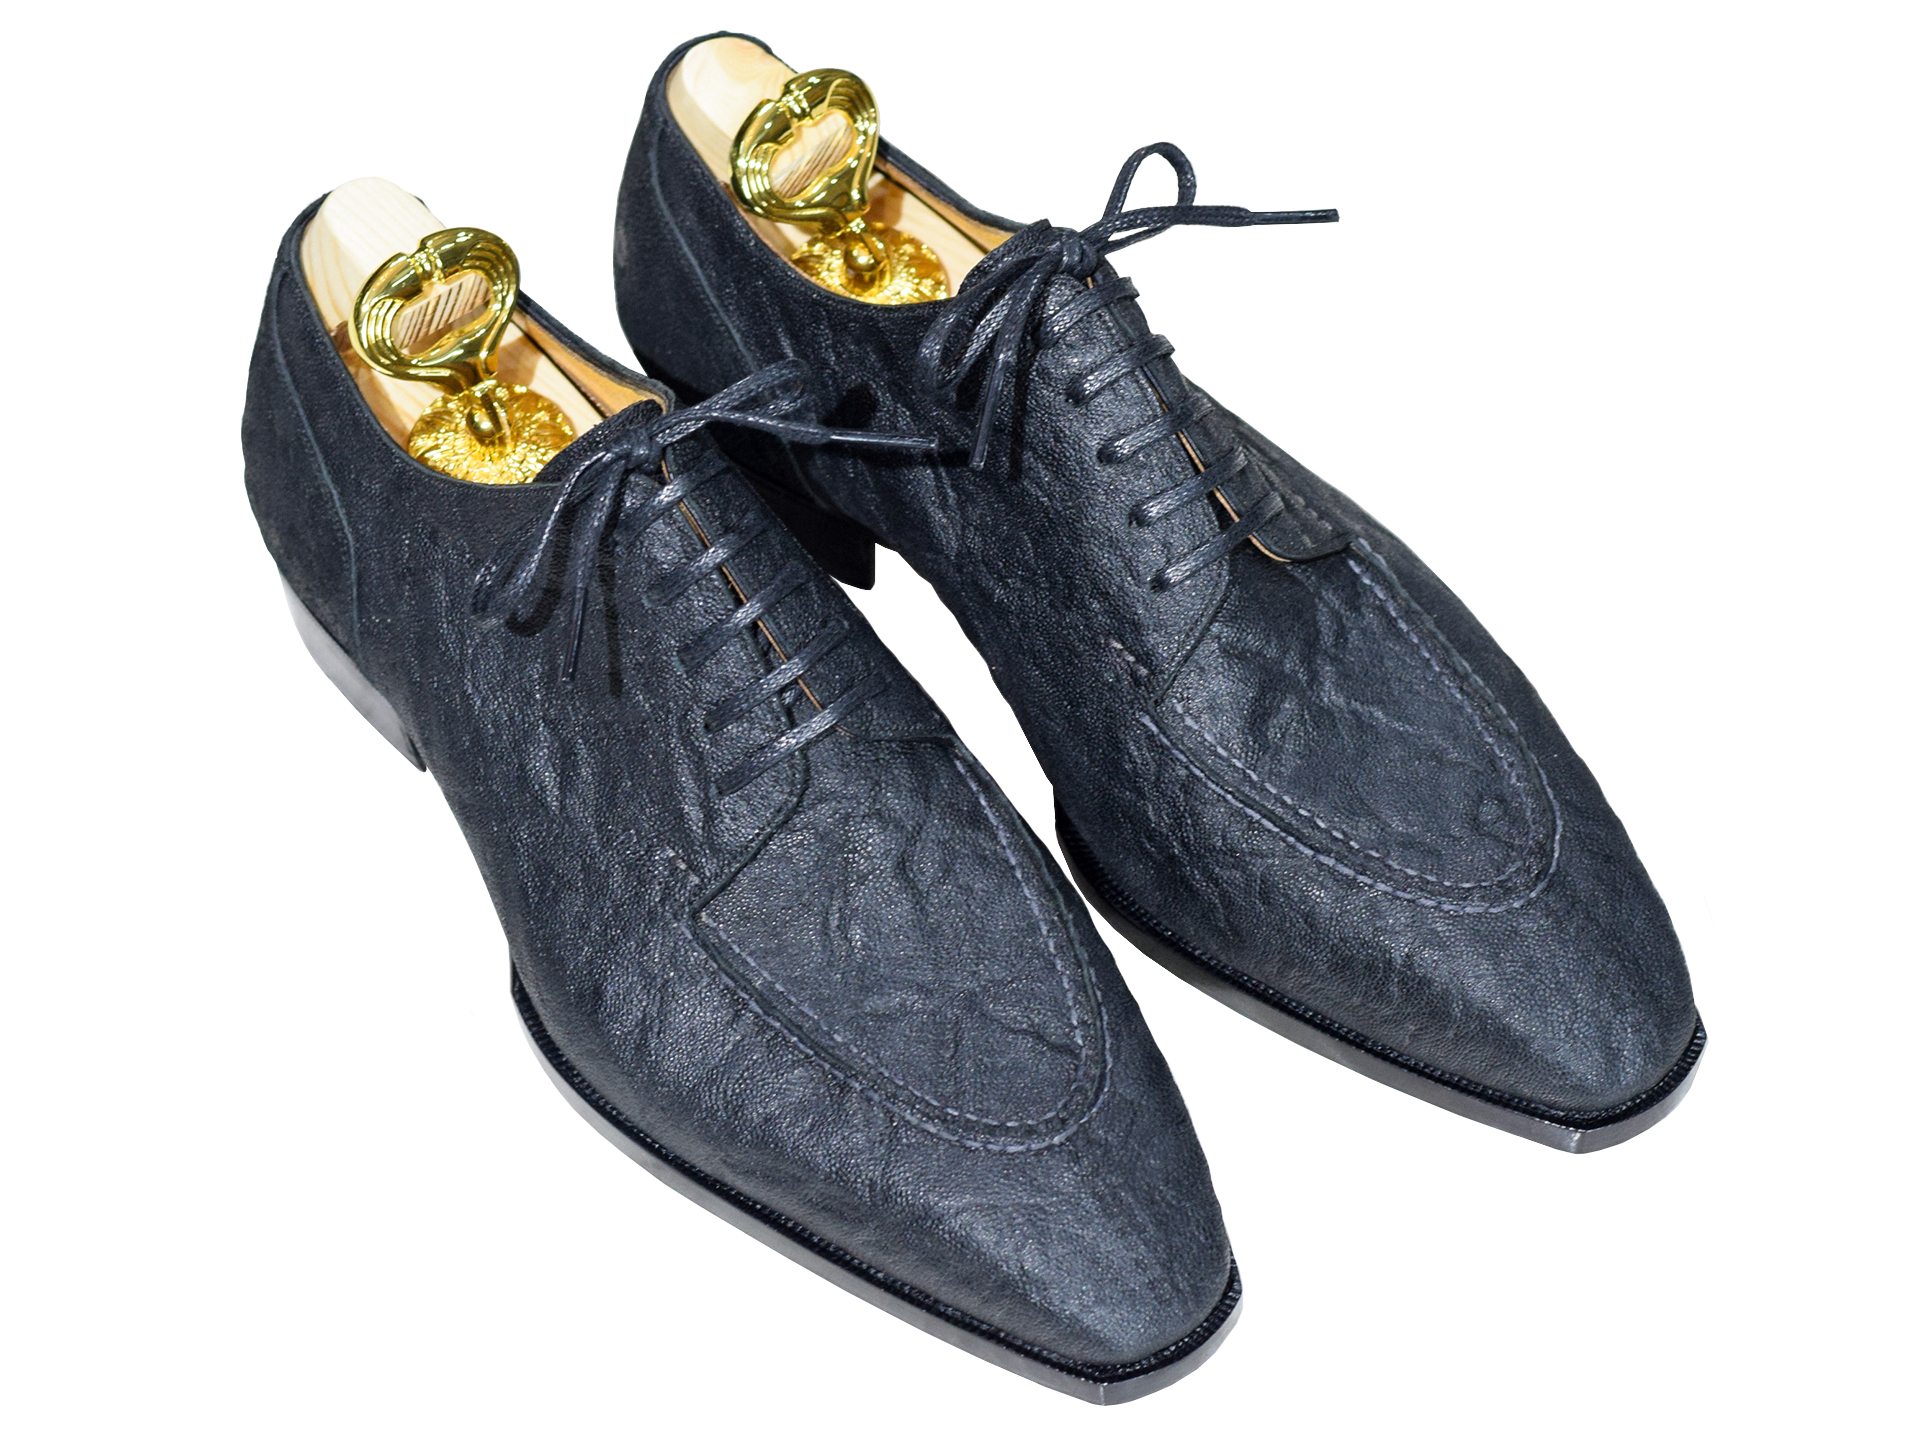 MTO Premium Derby Split toe shoes - Elephant leather